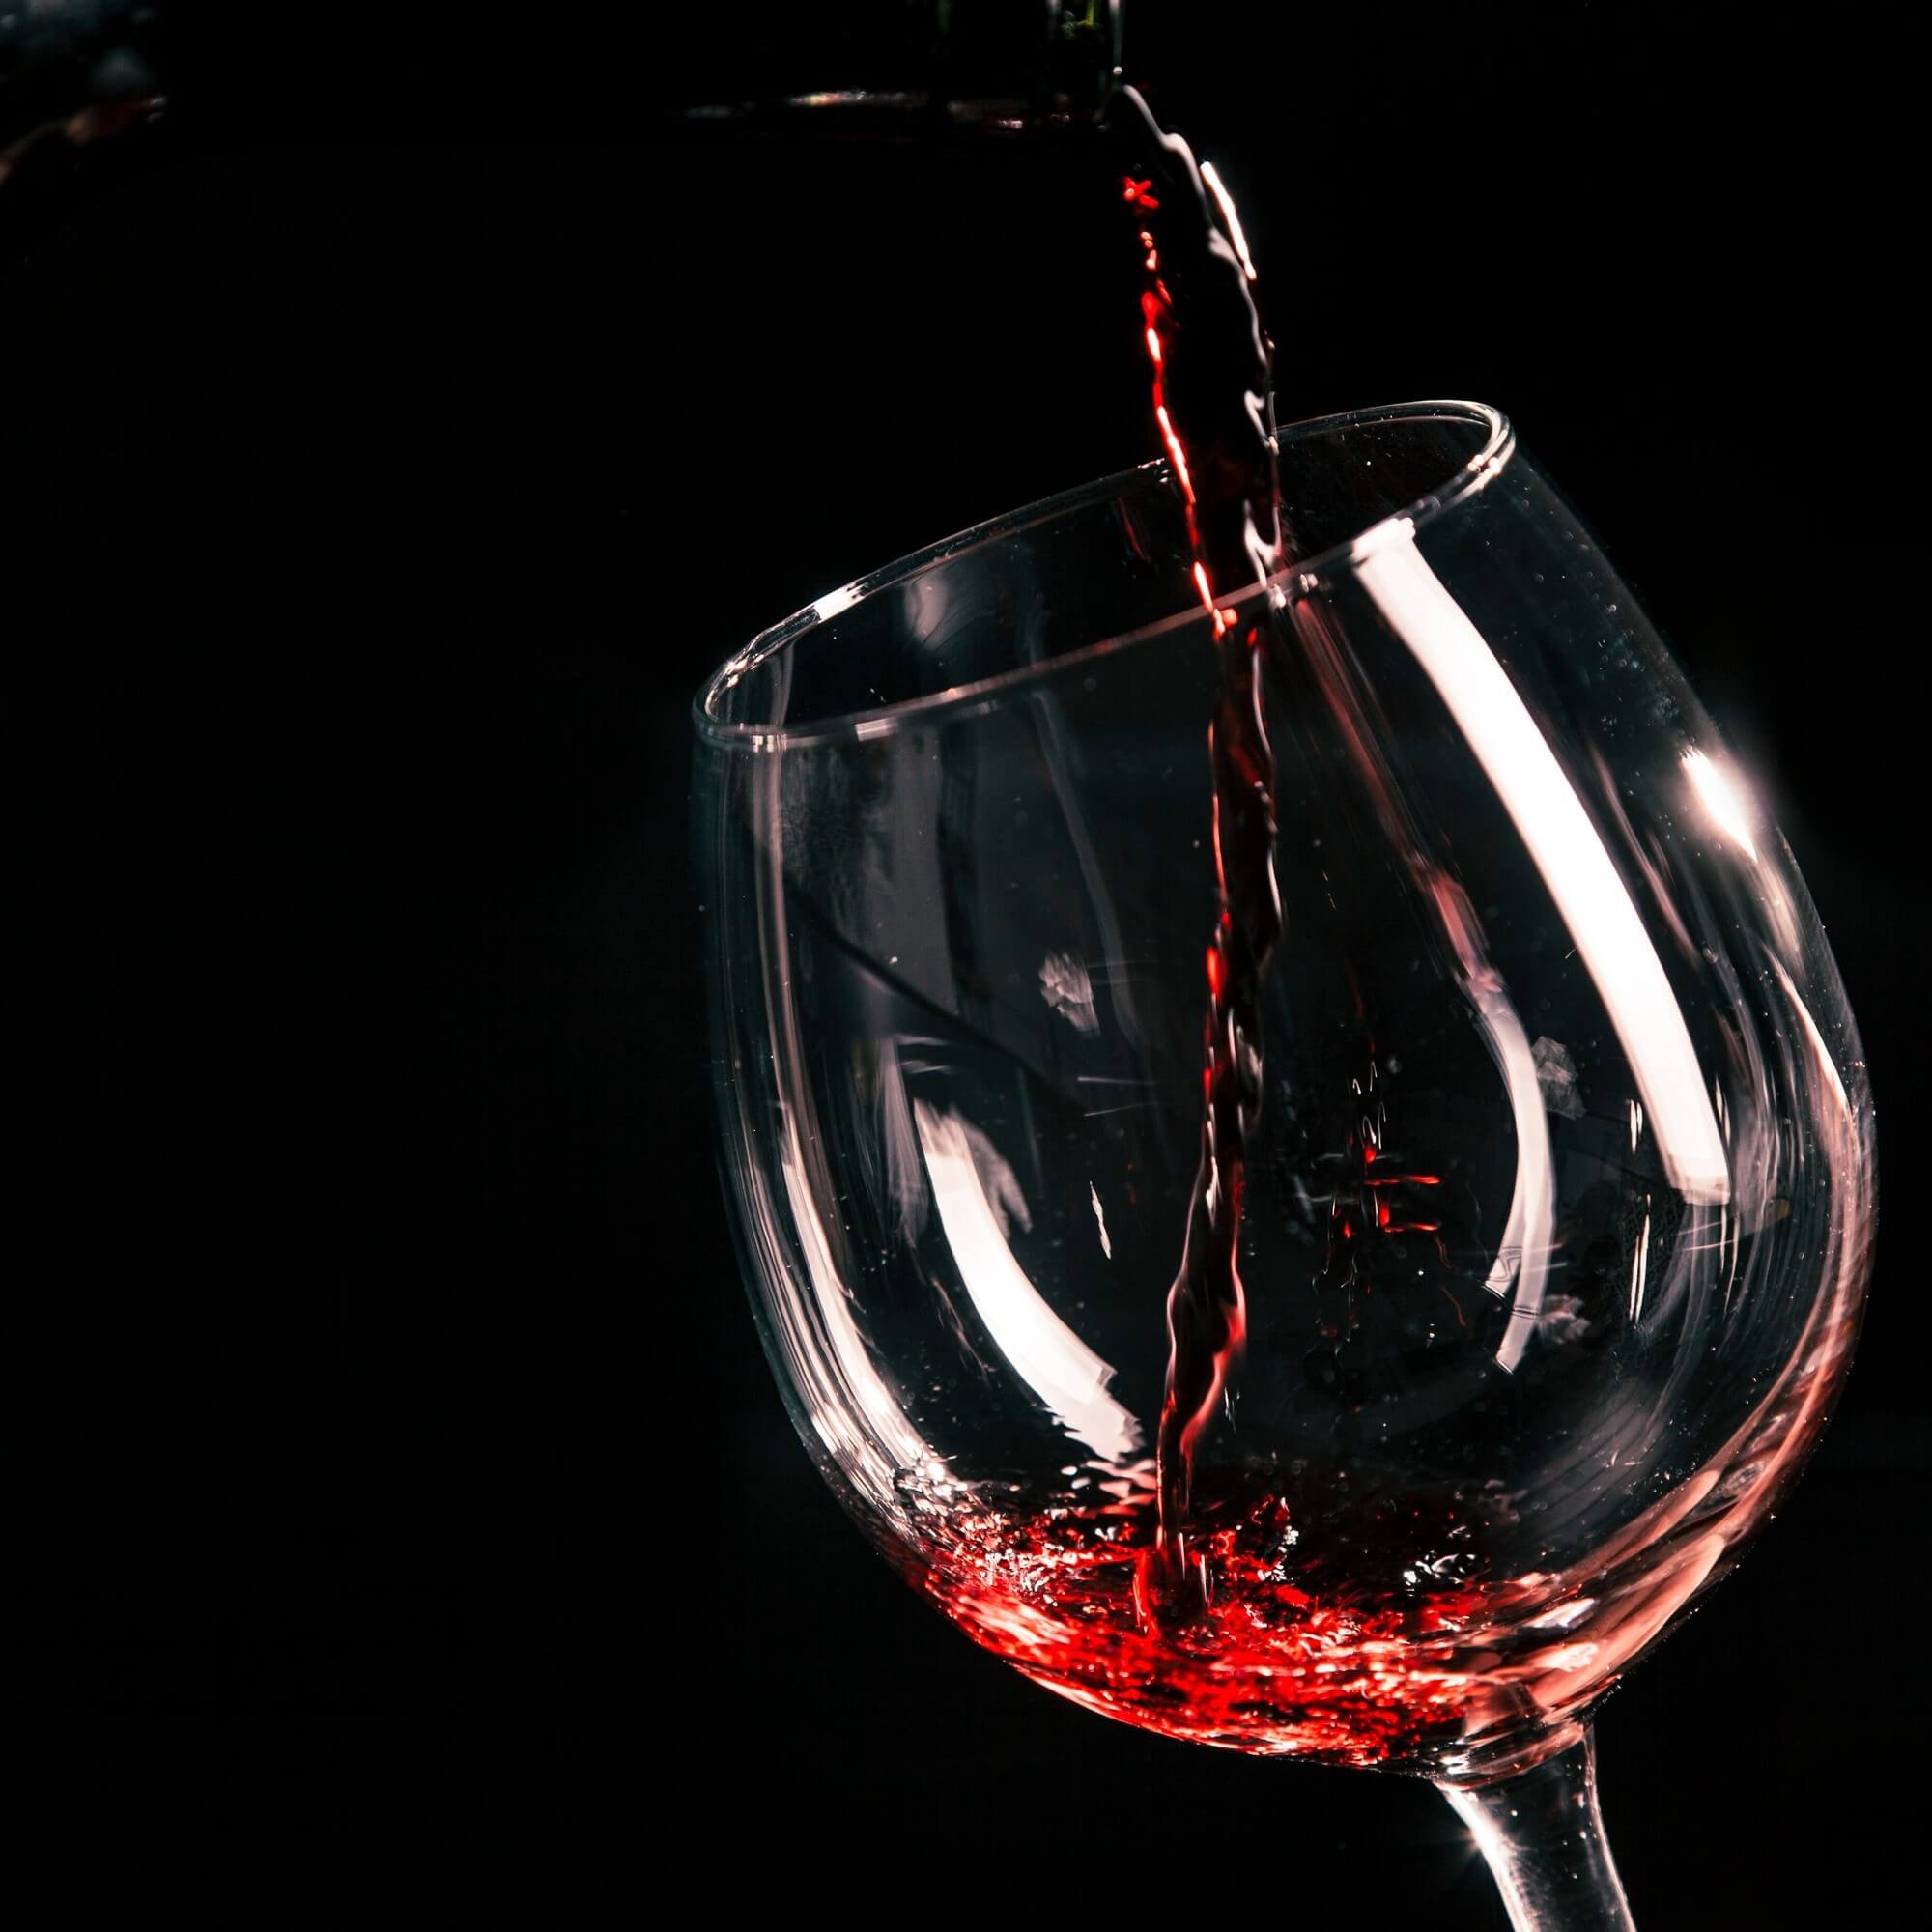 מבציר לבקבוק: מסע הפריקה והיצירה של היין המושלם